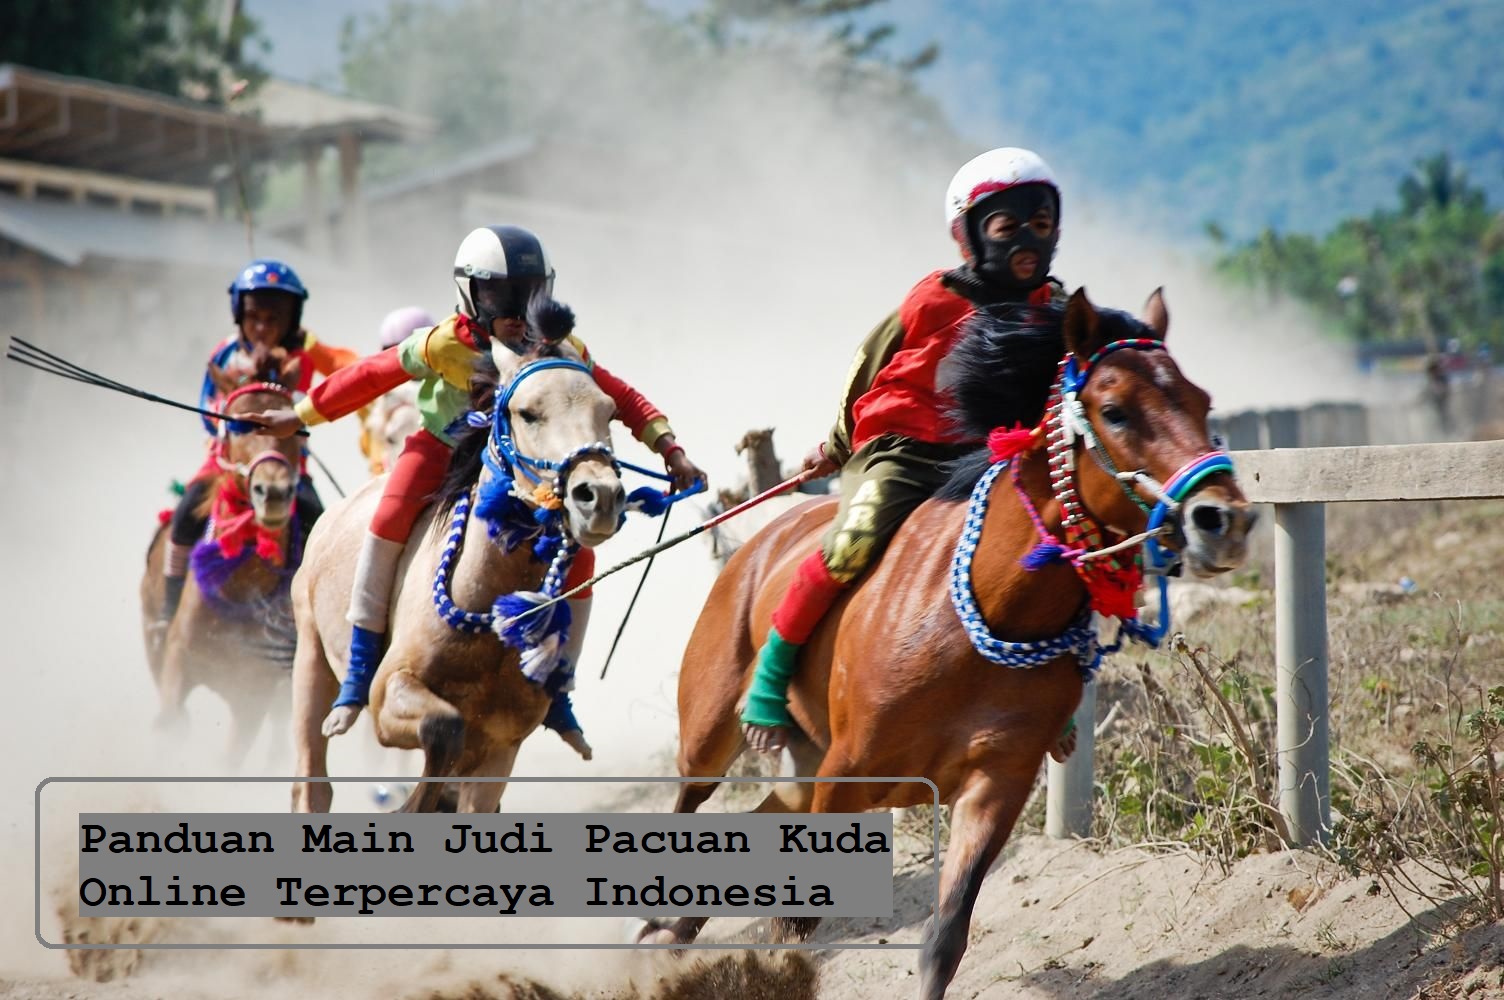 Panduan Main Judi Pacuan Kuda Online Terpercaya Indonesia